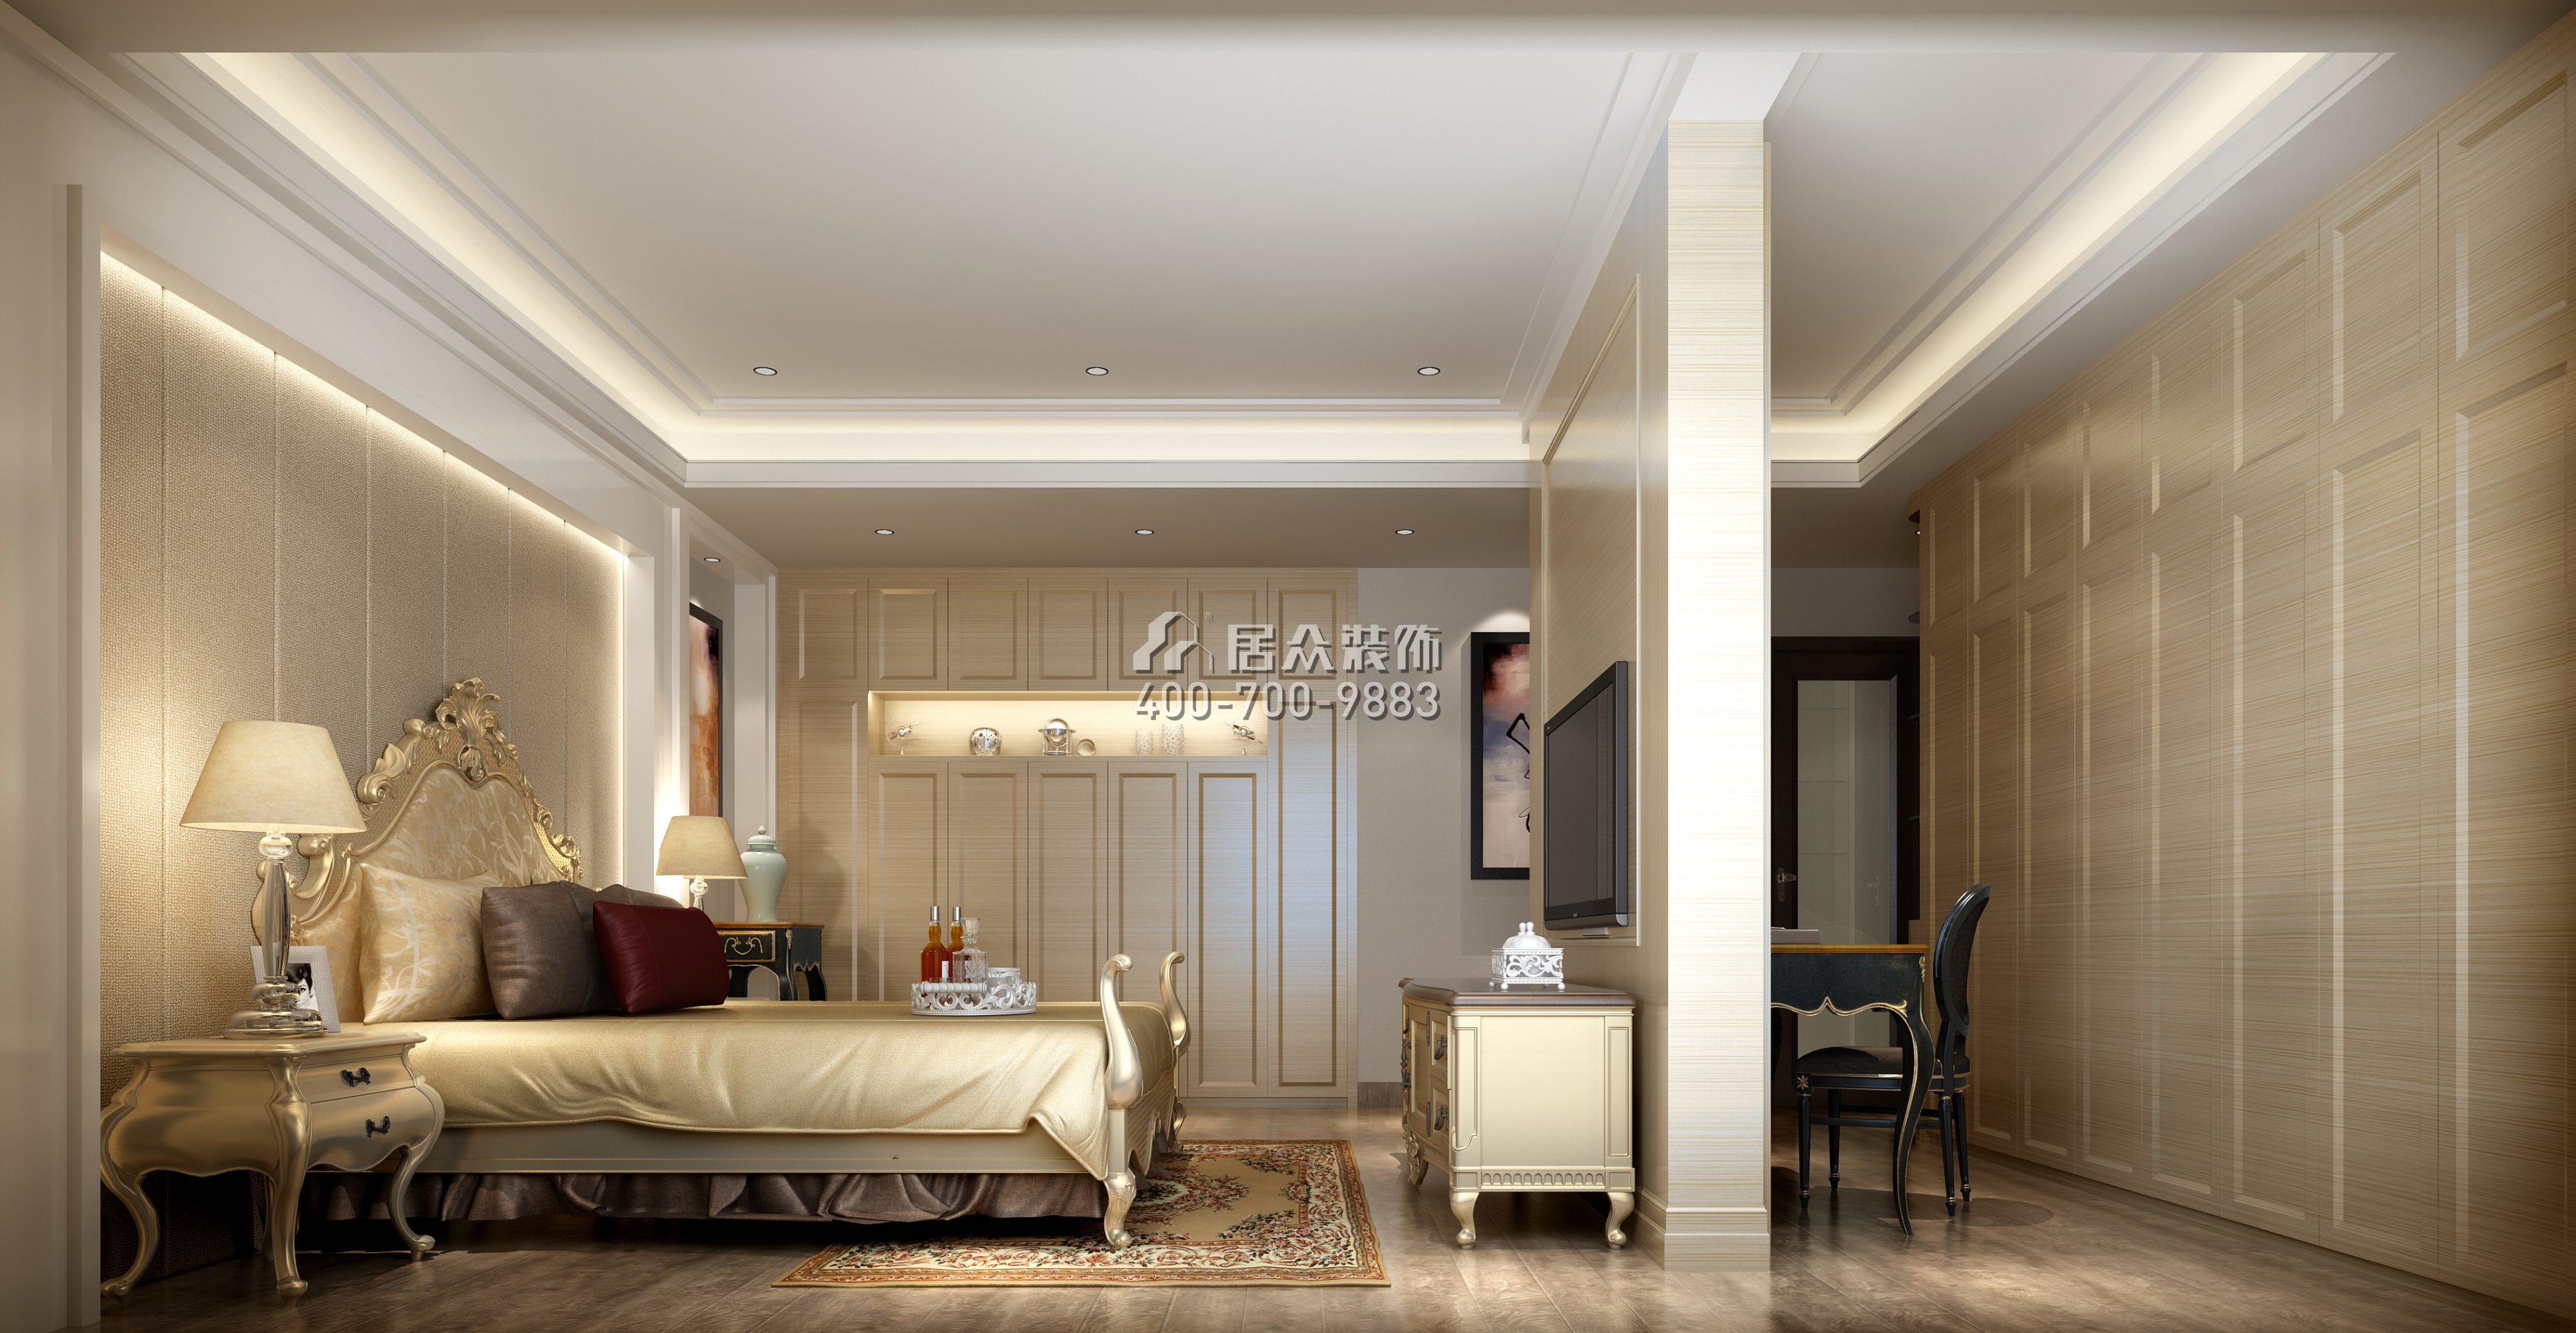 黄埔雅苑二期268平方米新古典风格复式户型卧室kok电竞平台效果图